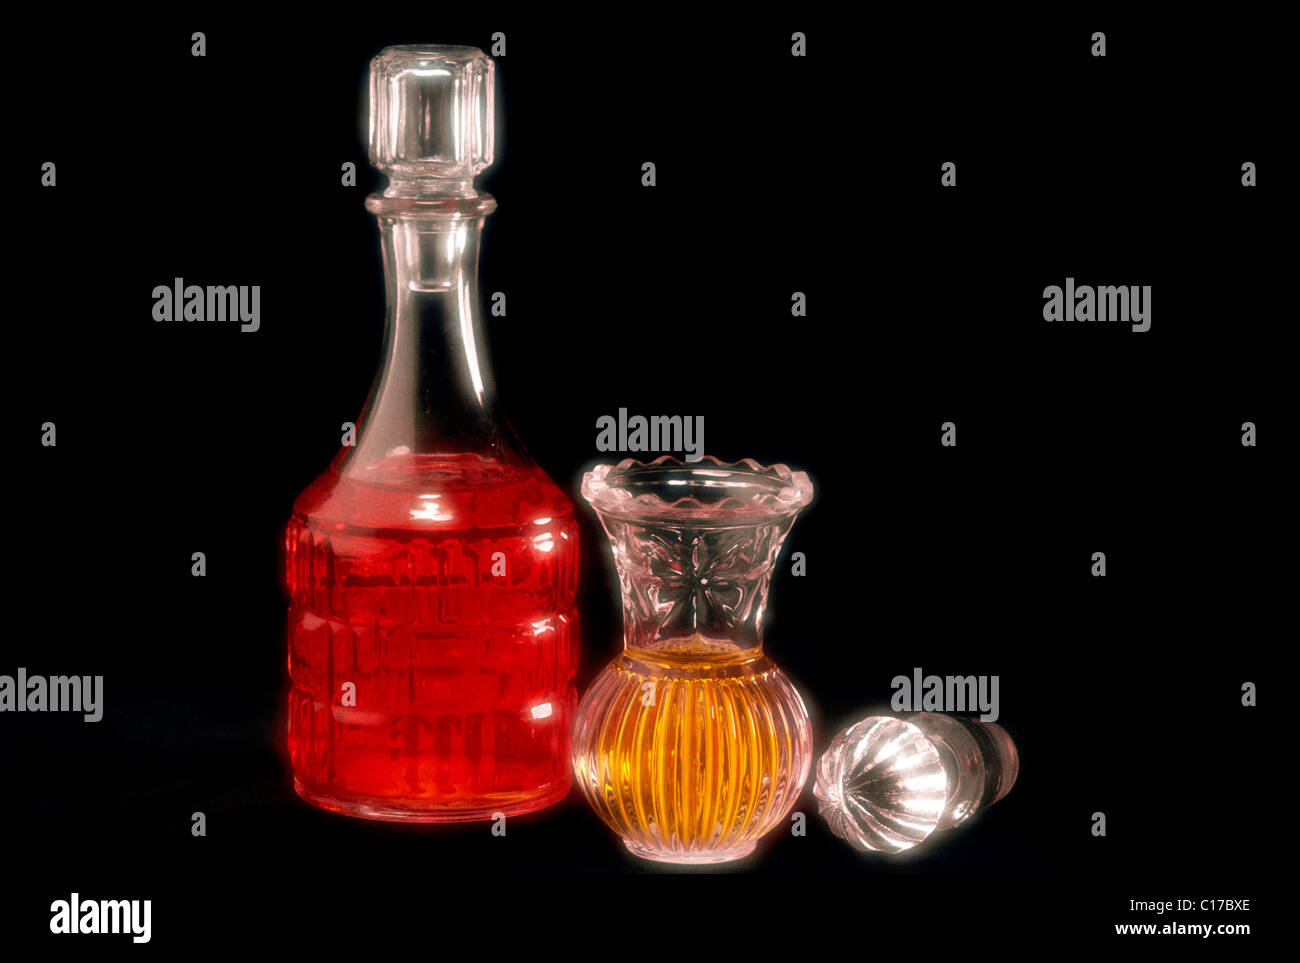 DJD-61260 : flacons de parfum sur fond noir Banque D'Images